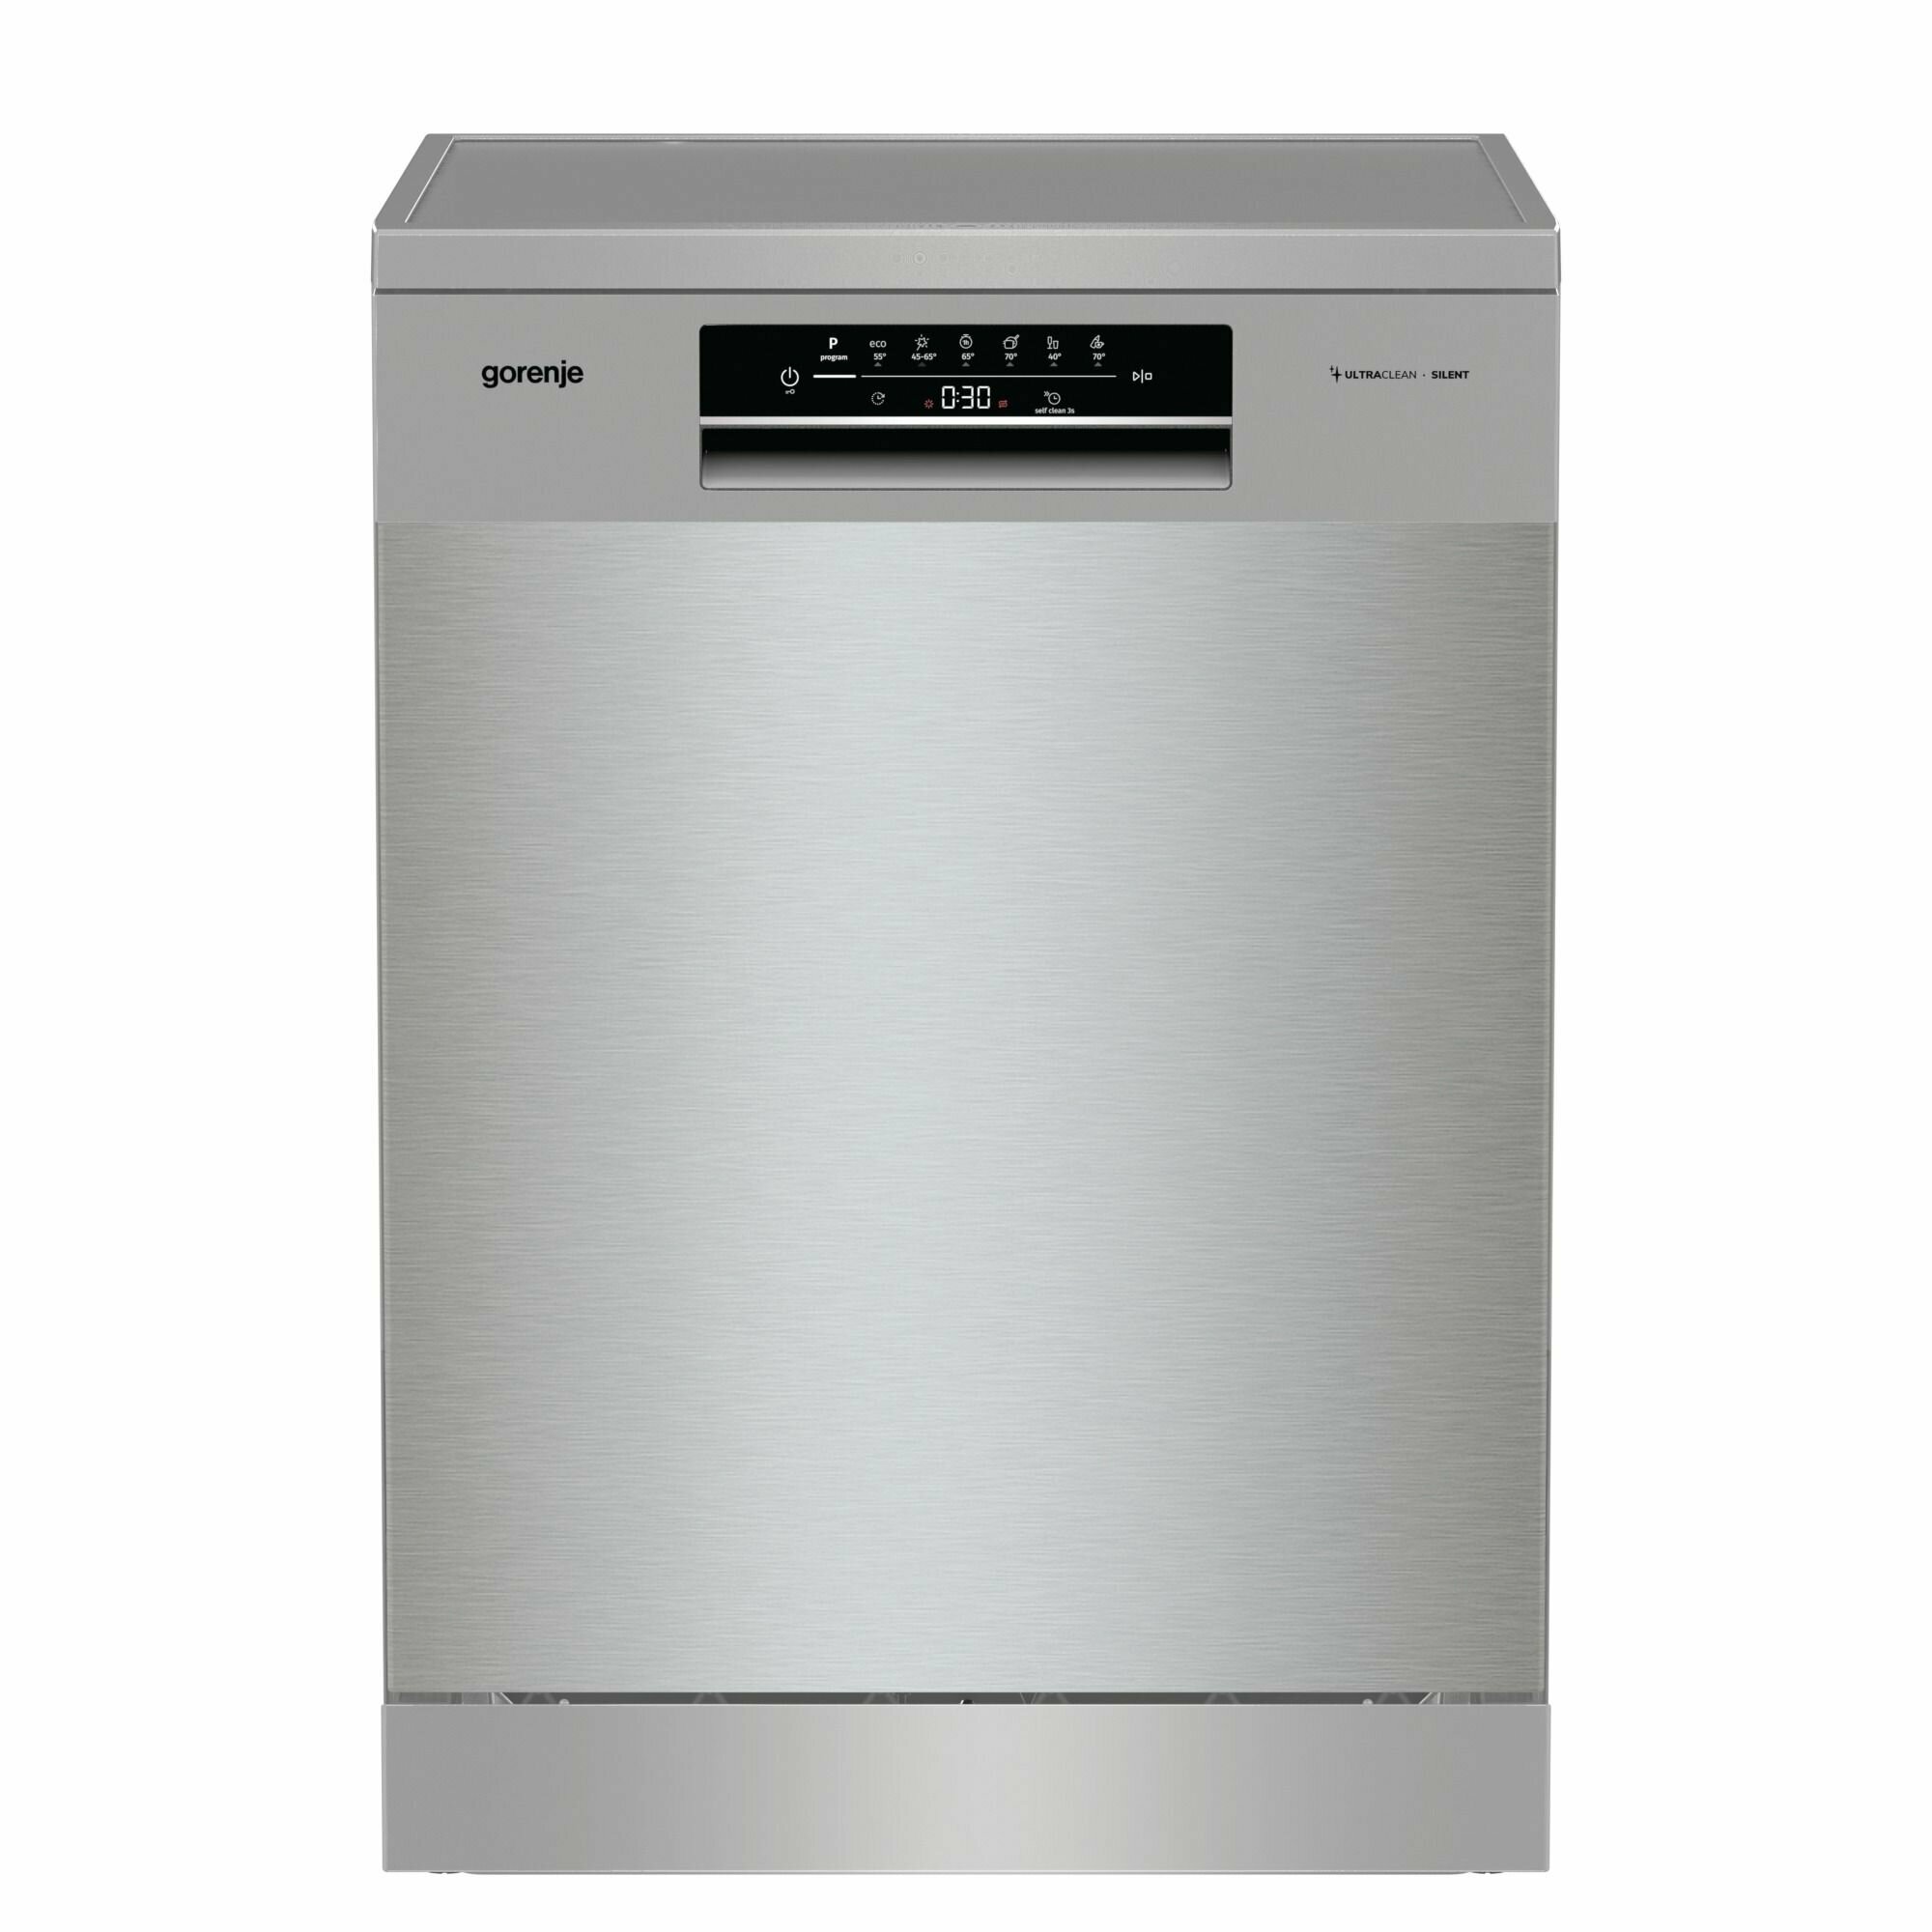 Отдельностоящая посудомоечная машина Gorenje GS643D90X, 60 см